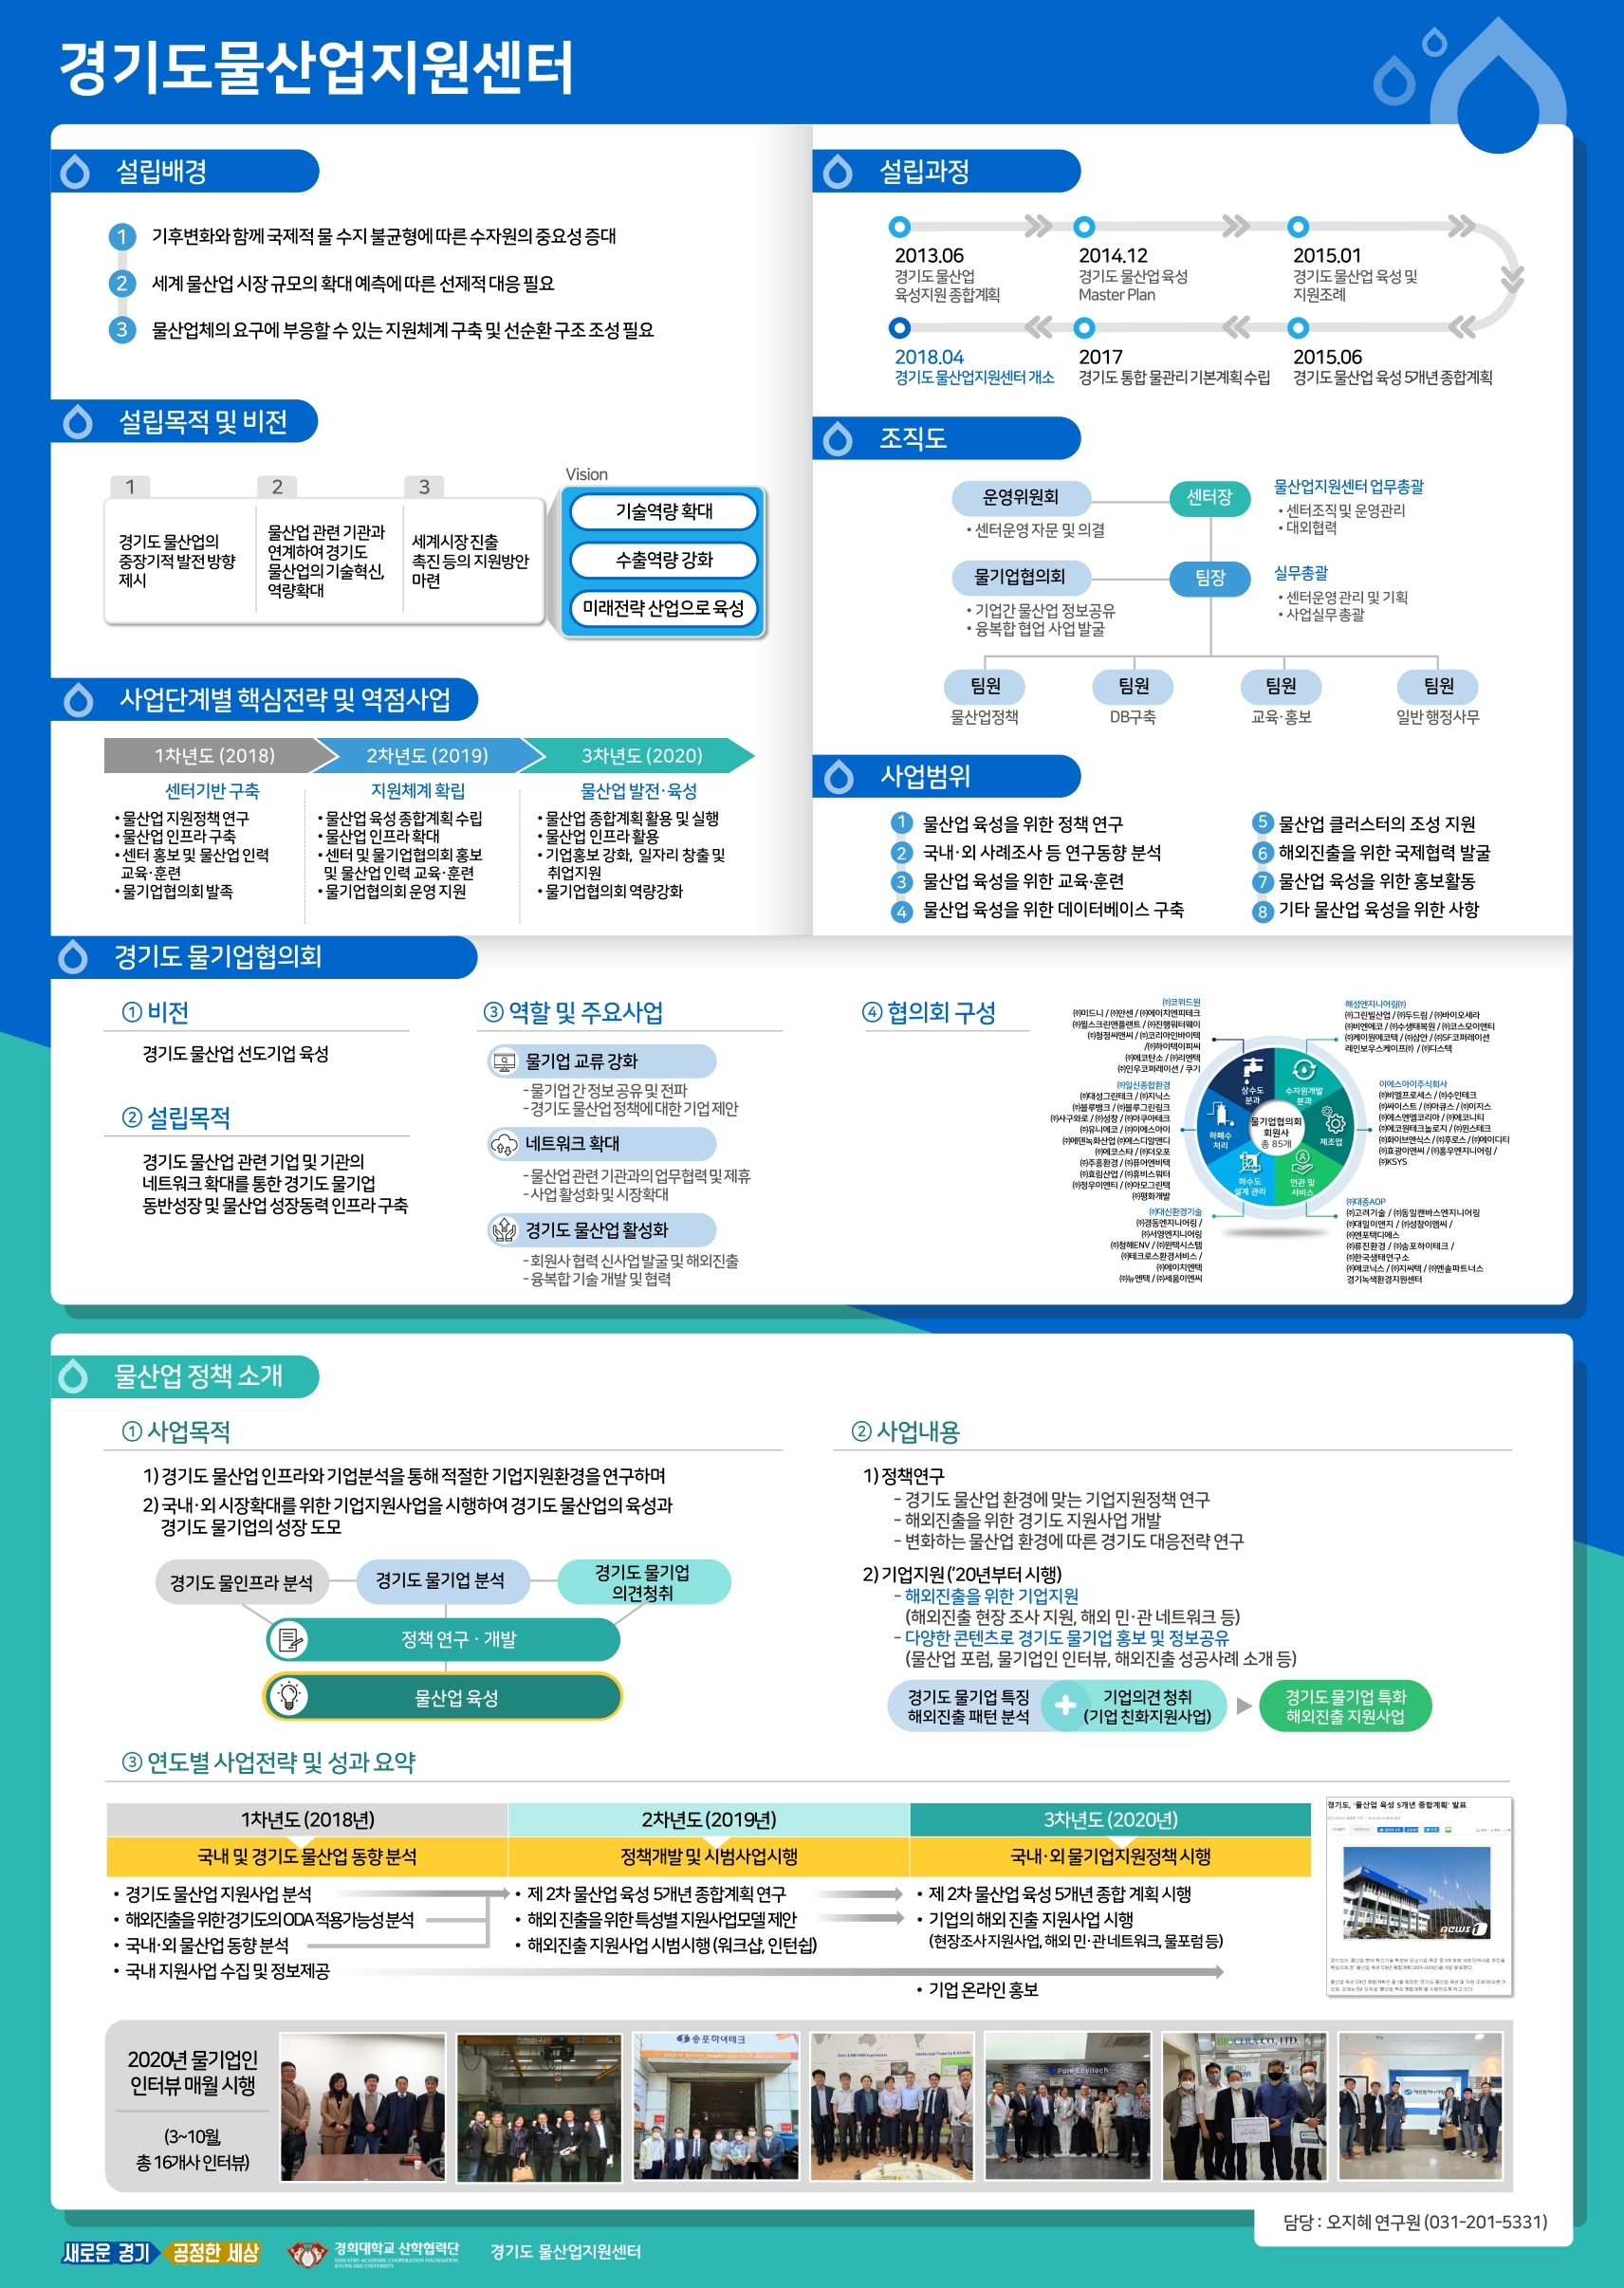 경기도 물산업지원센터 홍보 포스터